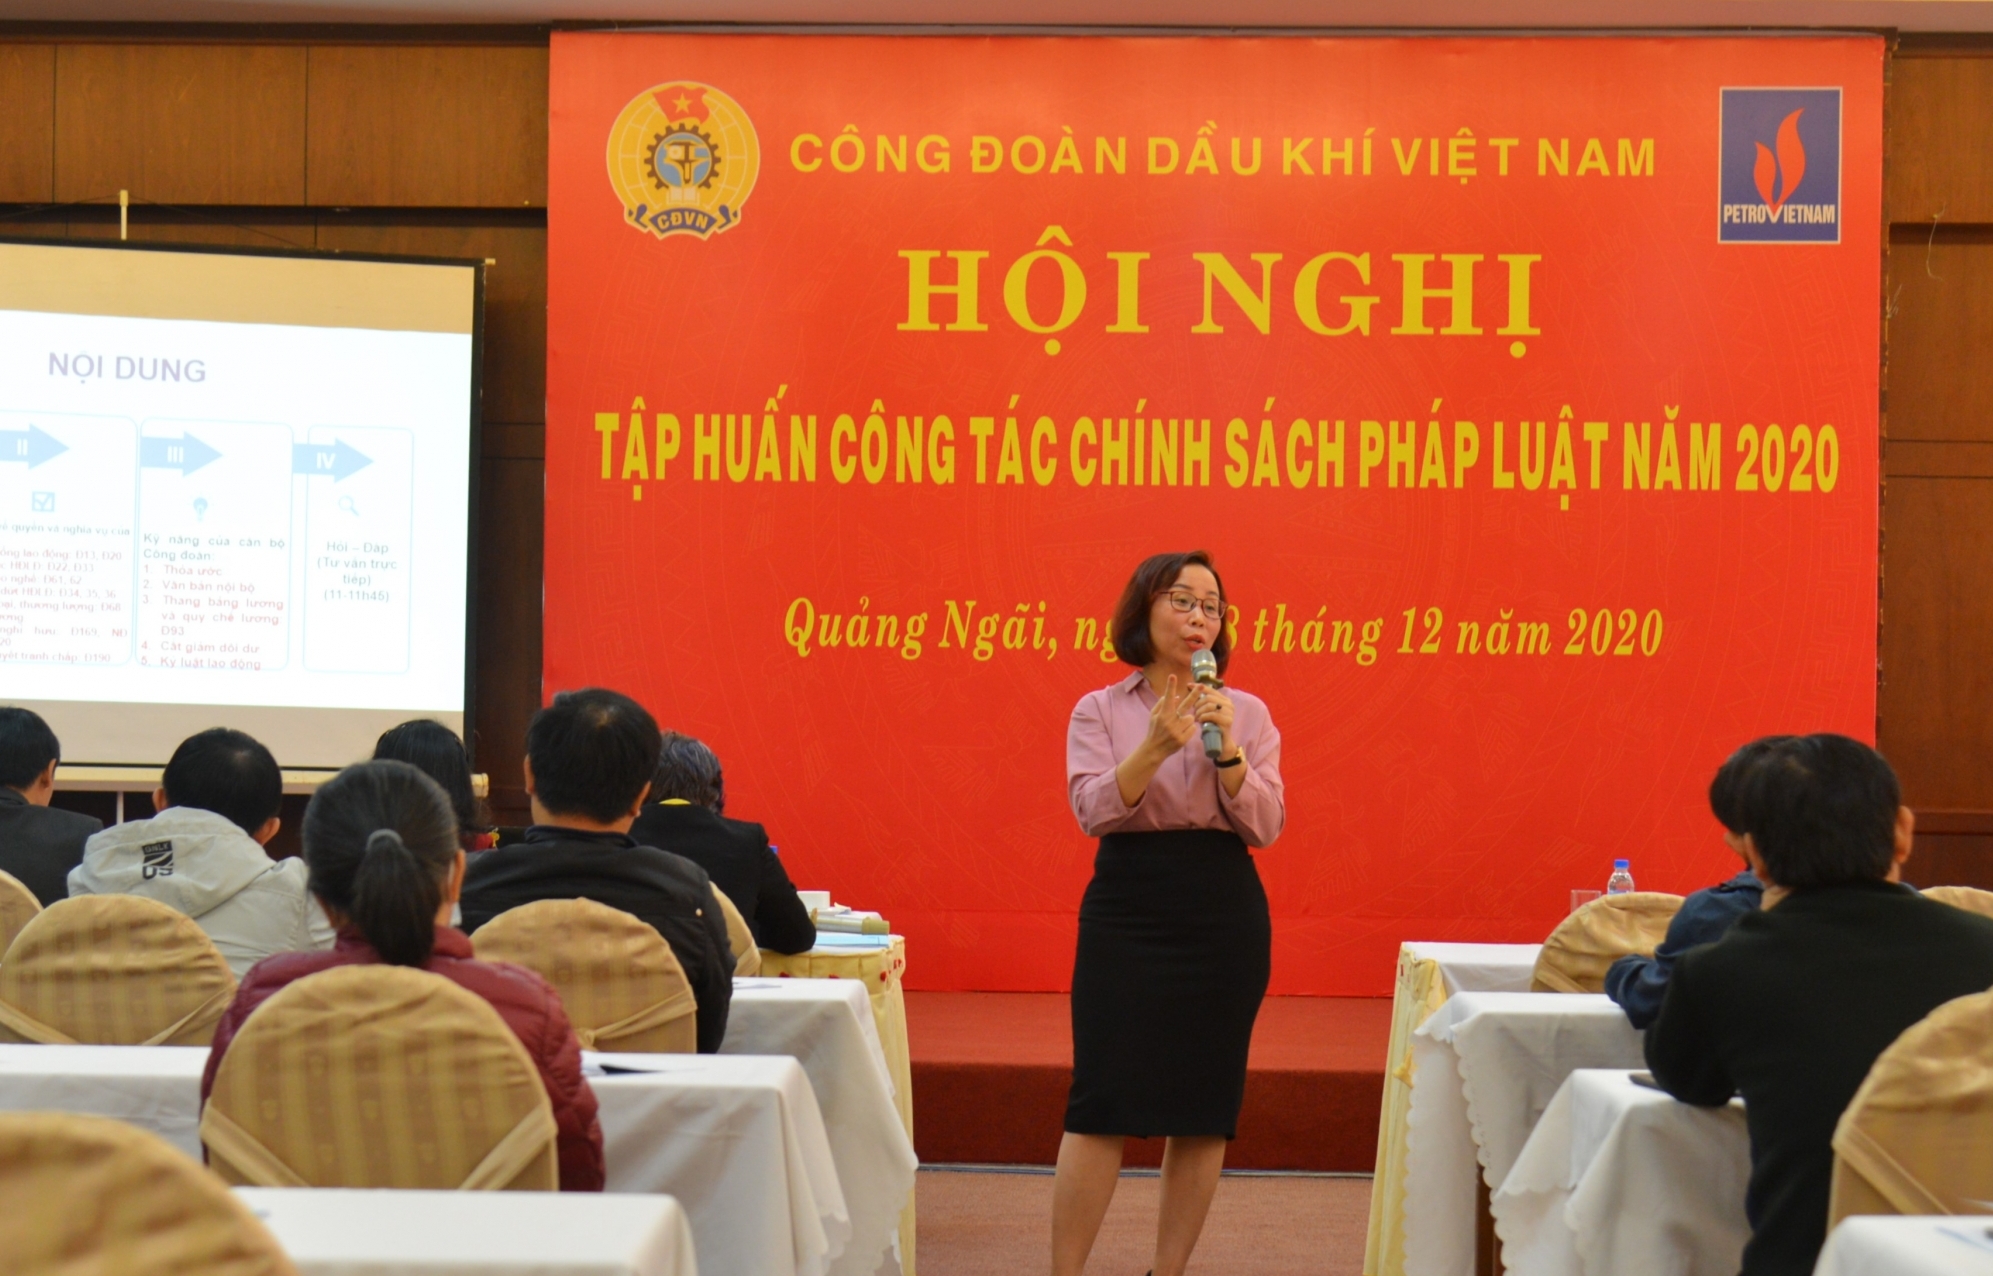 CĐ DKVN tổ chức Hội nghị Tập huấn công tác chính sách pháp luật năm 2020 tại miền Trung